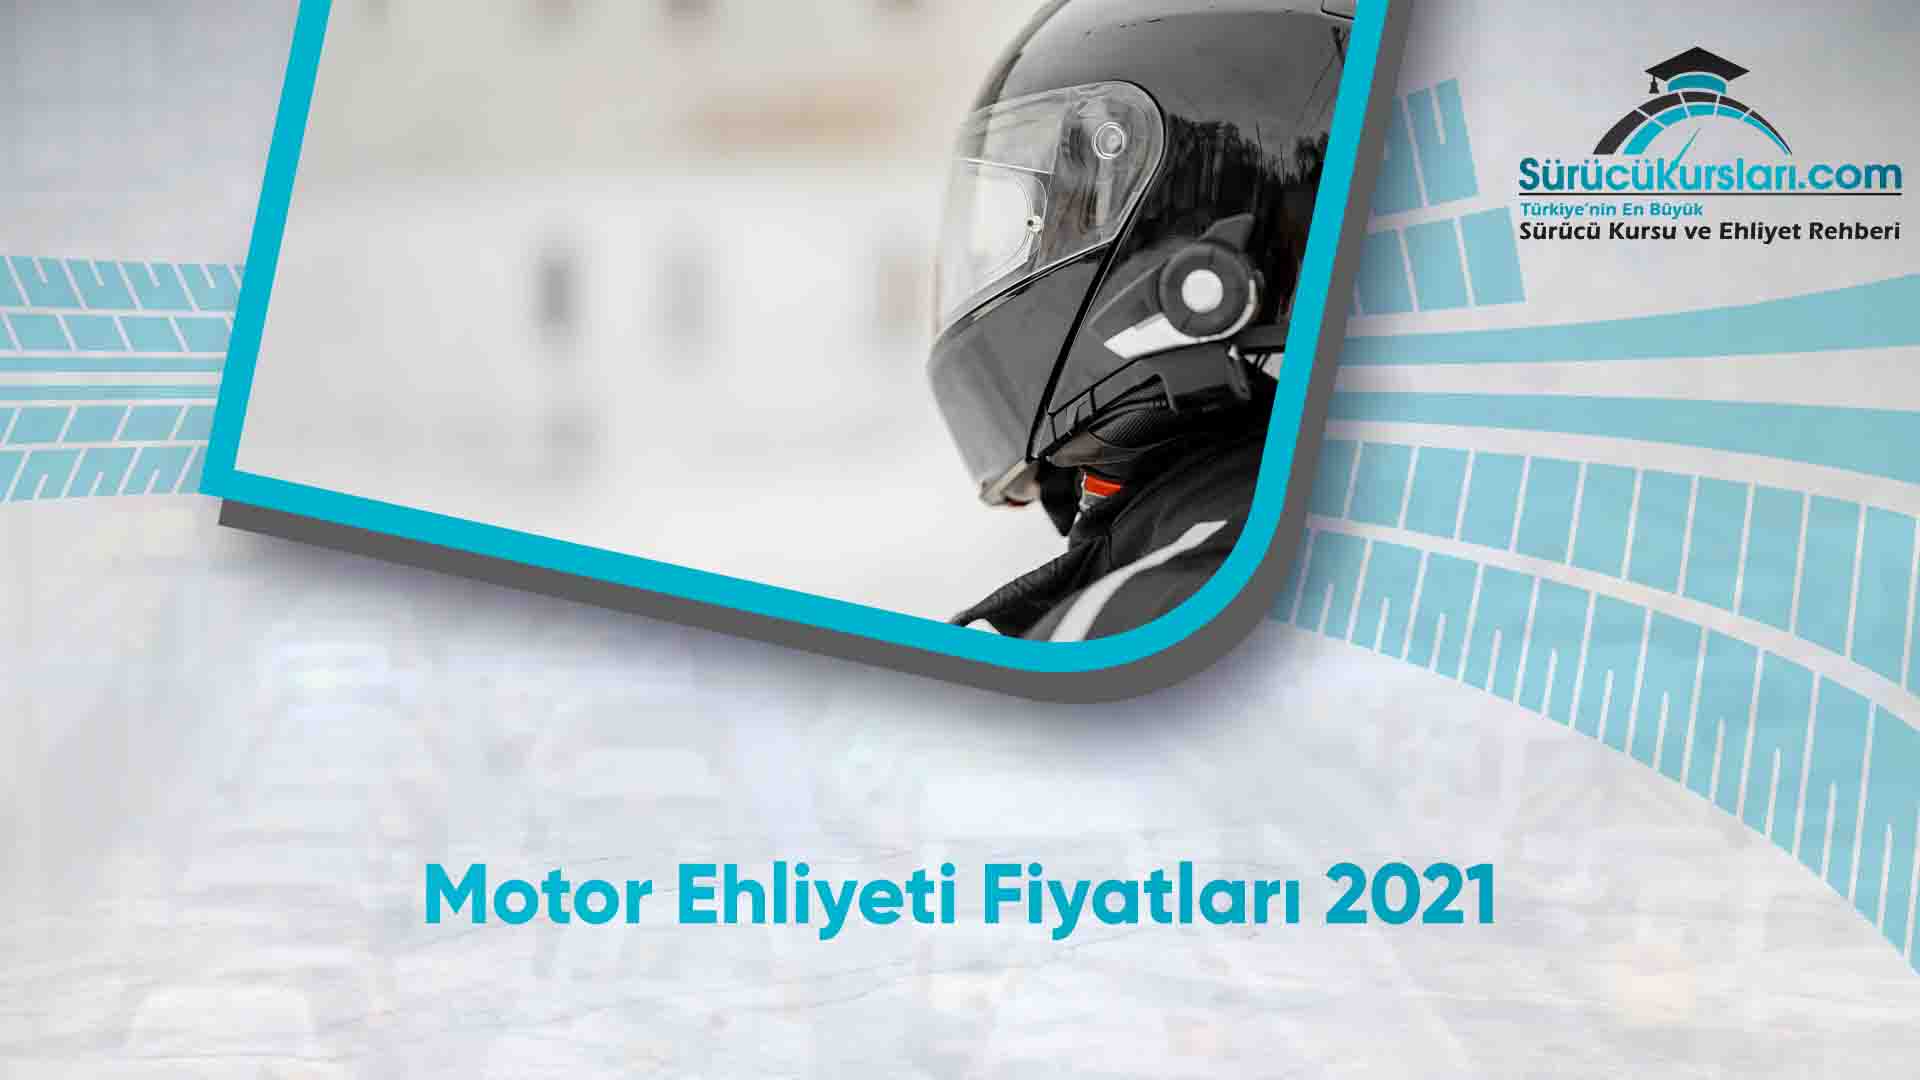 Motor Ehliyeti Fiyatları 2021